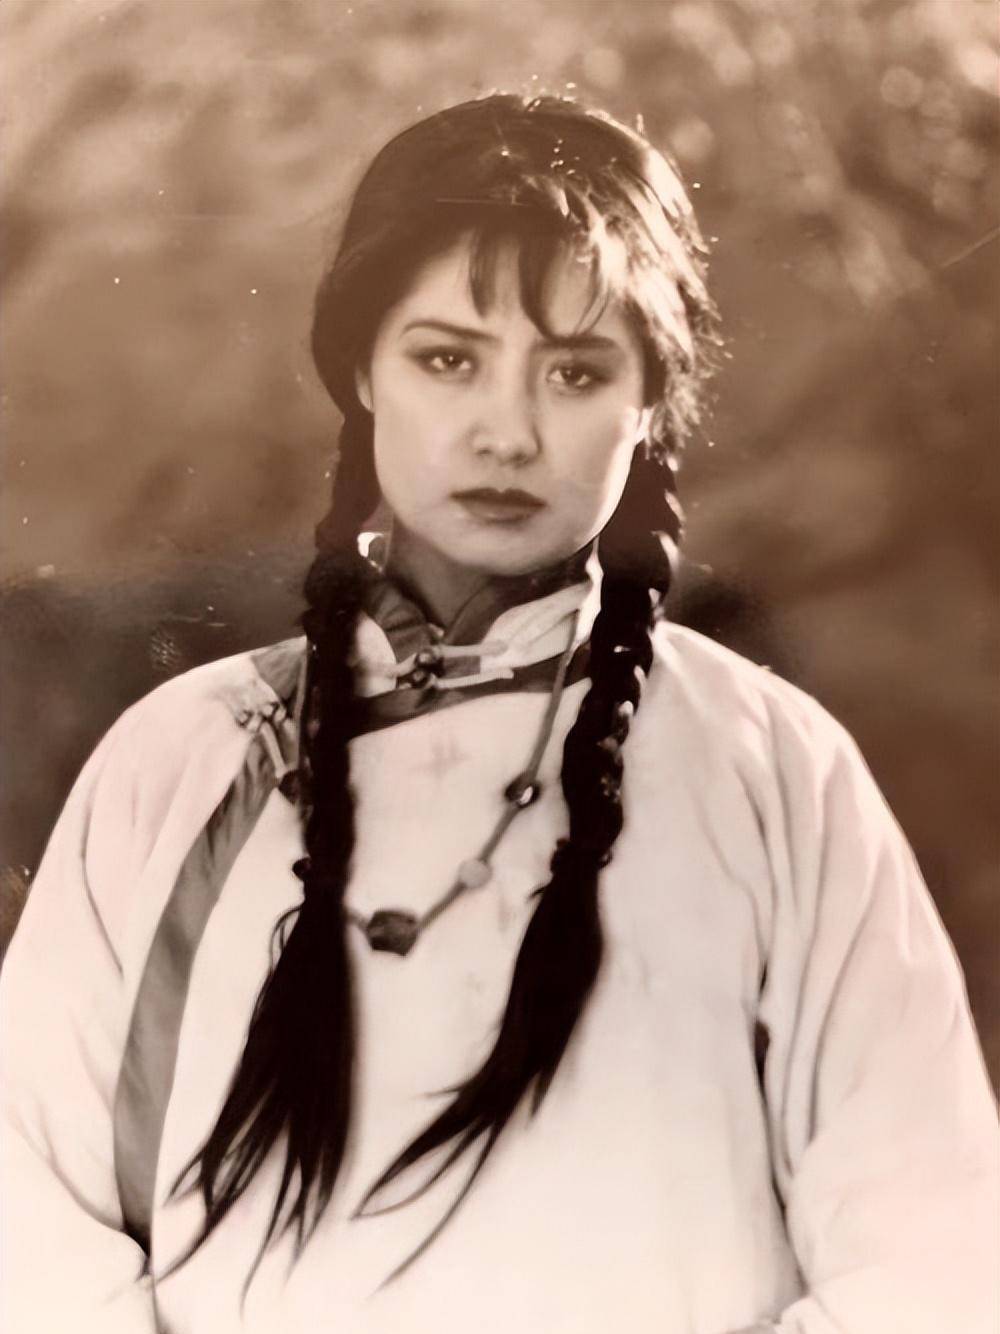 萨仁高娃1962年生于内蒙古集宁市,在进入北电之前,曾经是一名舞蹈演员